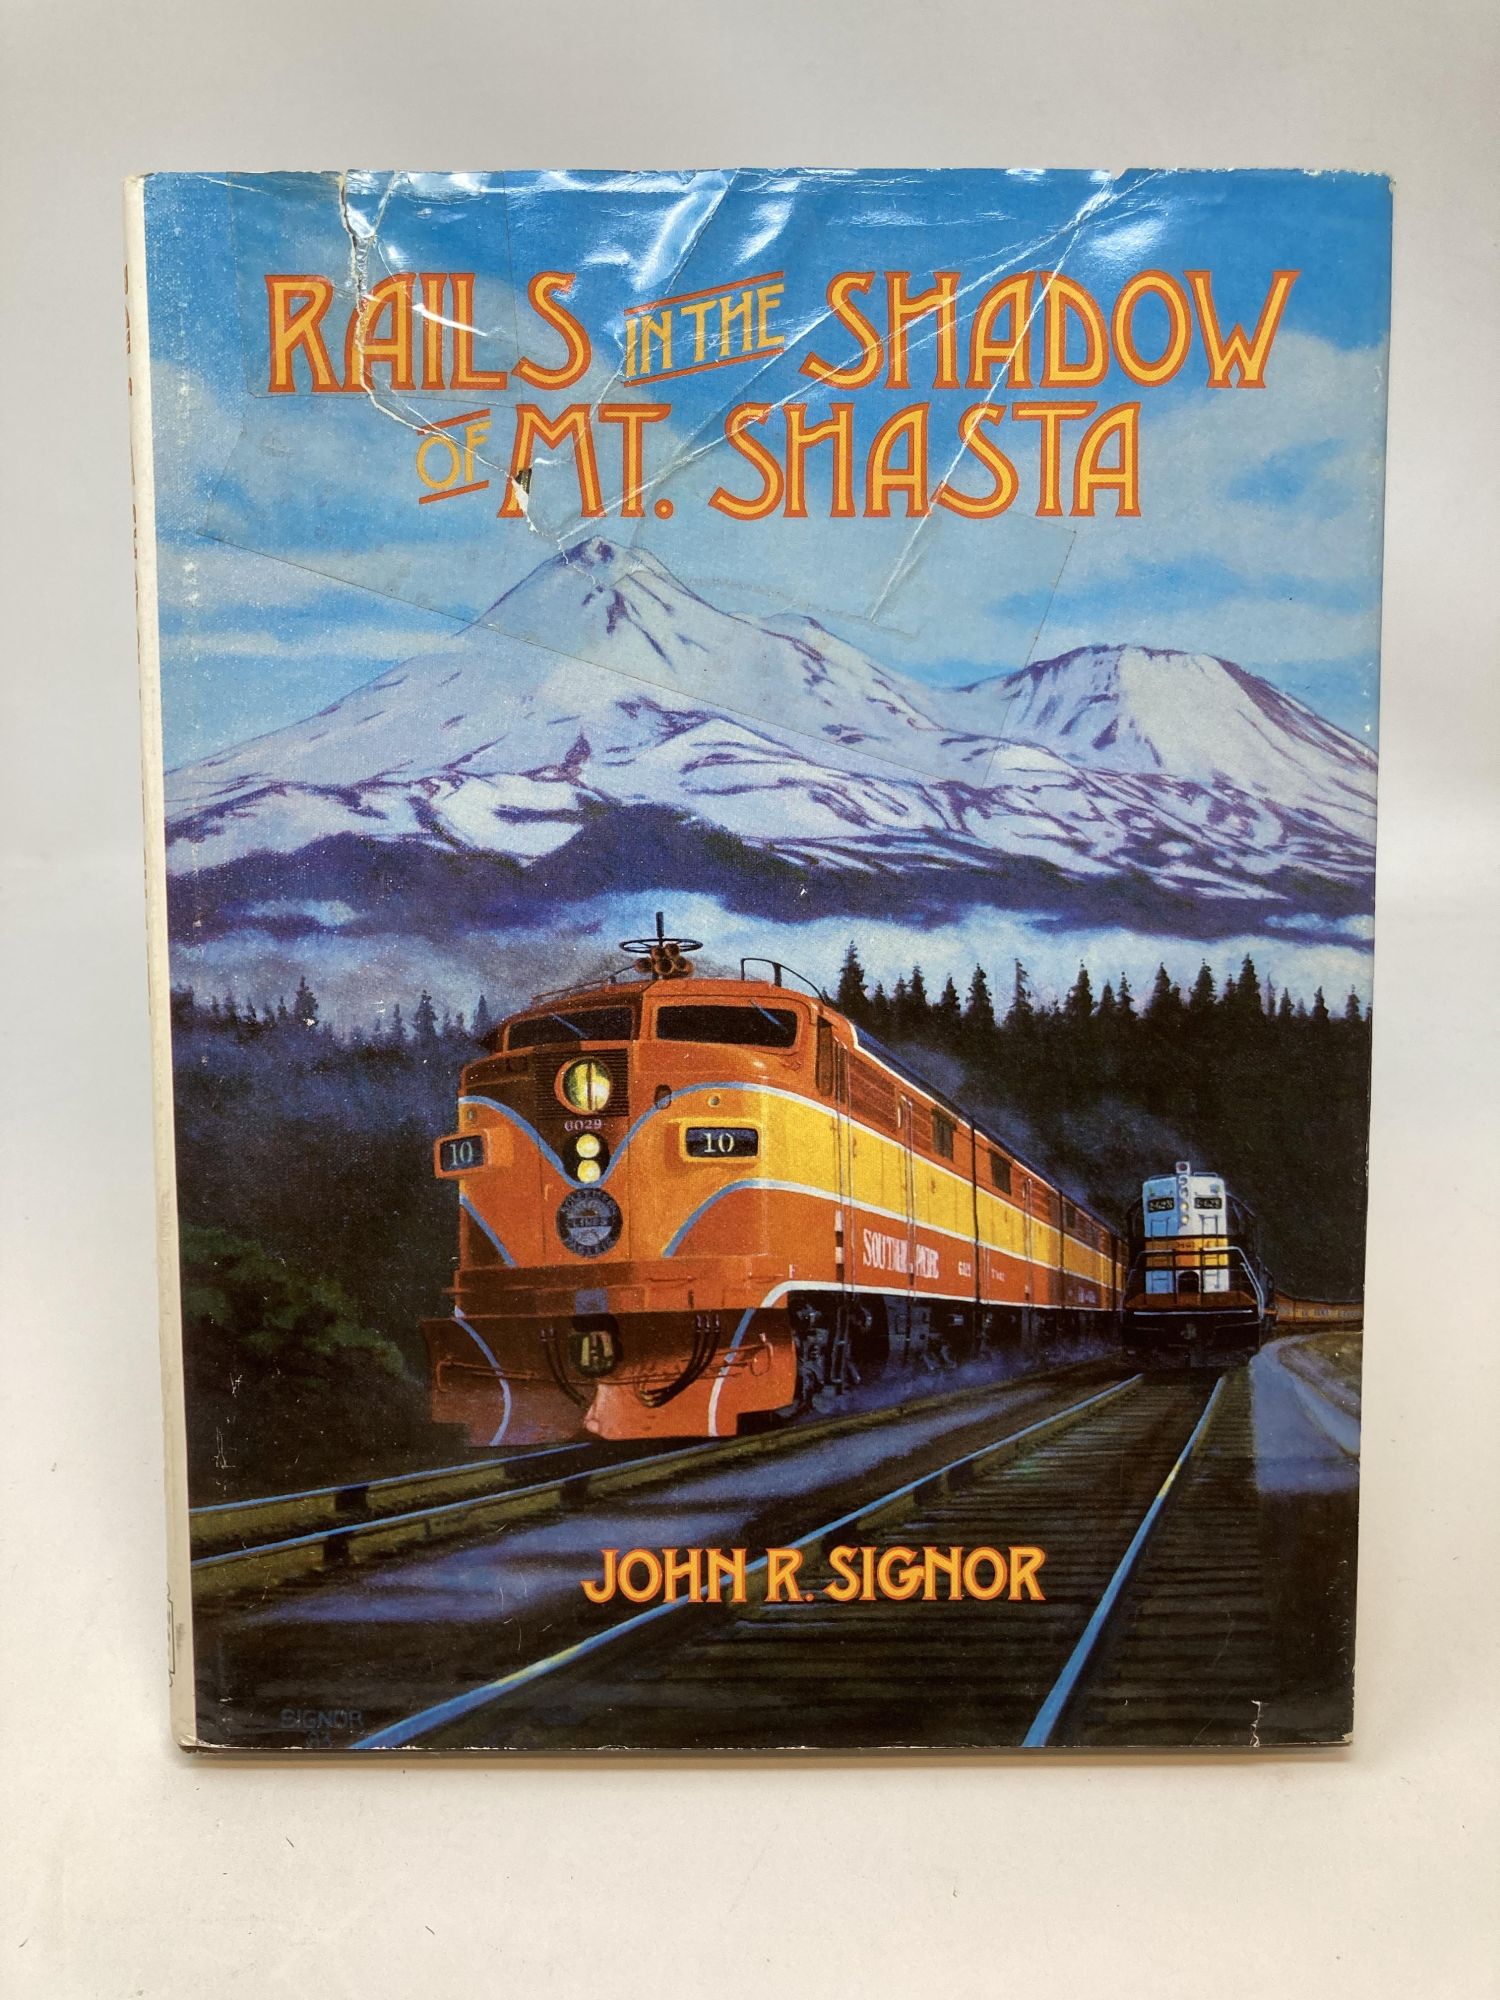 Signor, John R. - Rails in the Shadow of Mt. Shasta